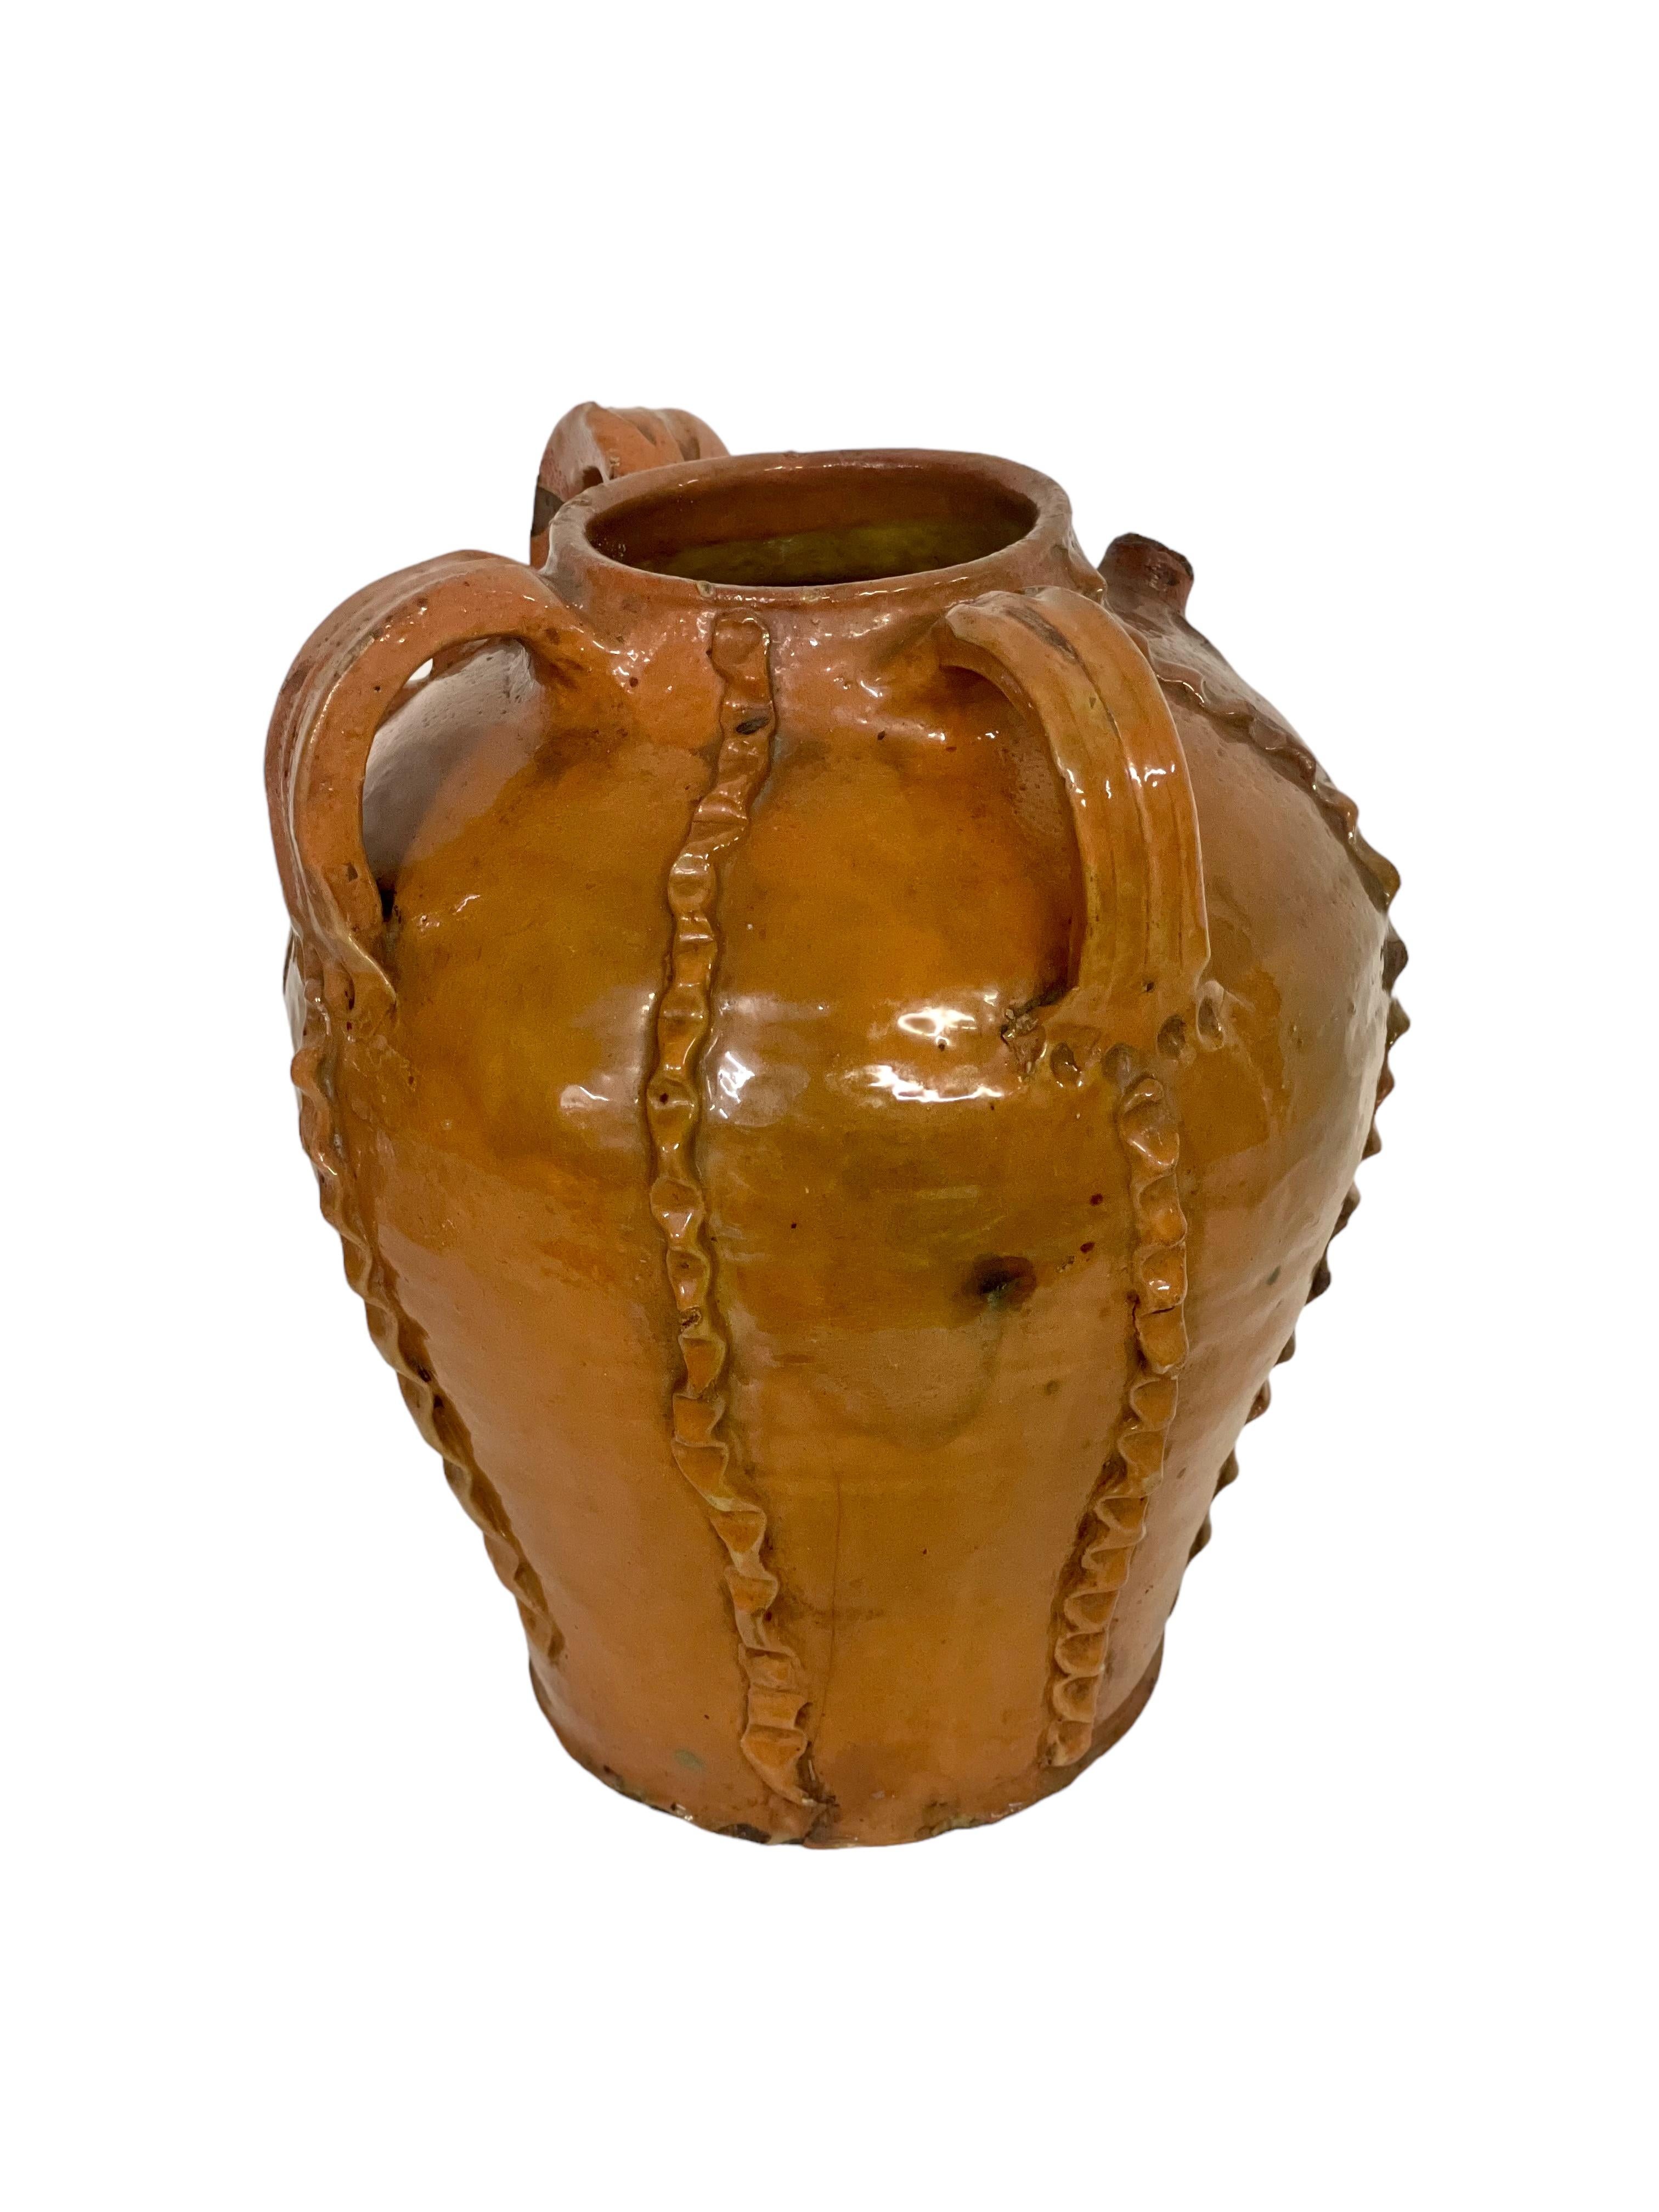 Ein hoher und formschöner antiker Ölkrug aus Nussbaumholz, der aus der Dordogne-Region in Frankreich stammt. Er ist vollständig in einem satten und glänzenden Goldbraun glasiert und zusätzlich mit mehreren applizierten und gekniffenen vertikalen